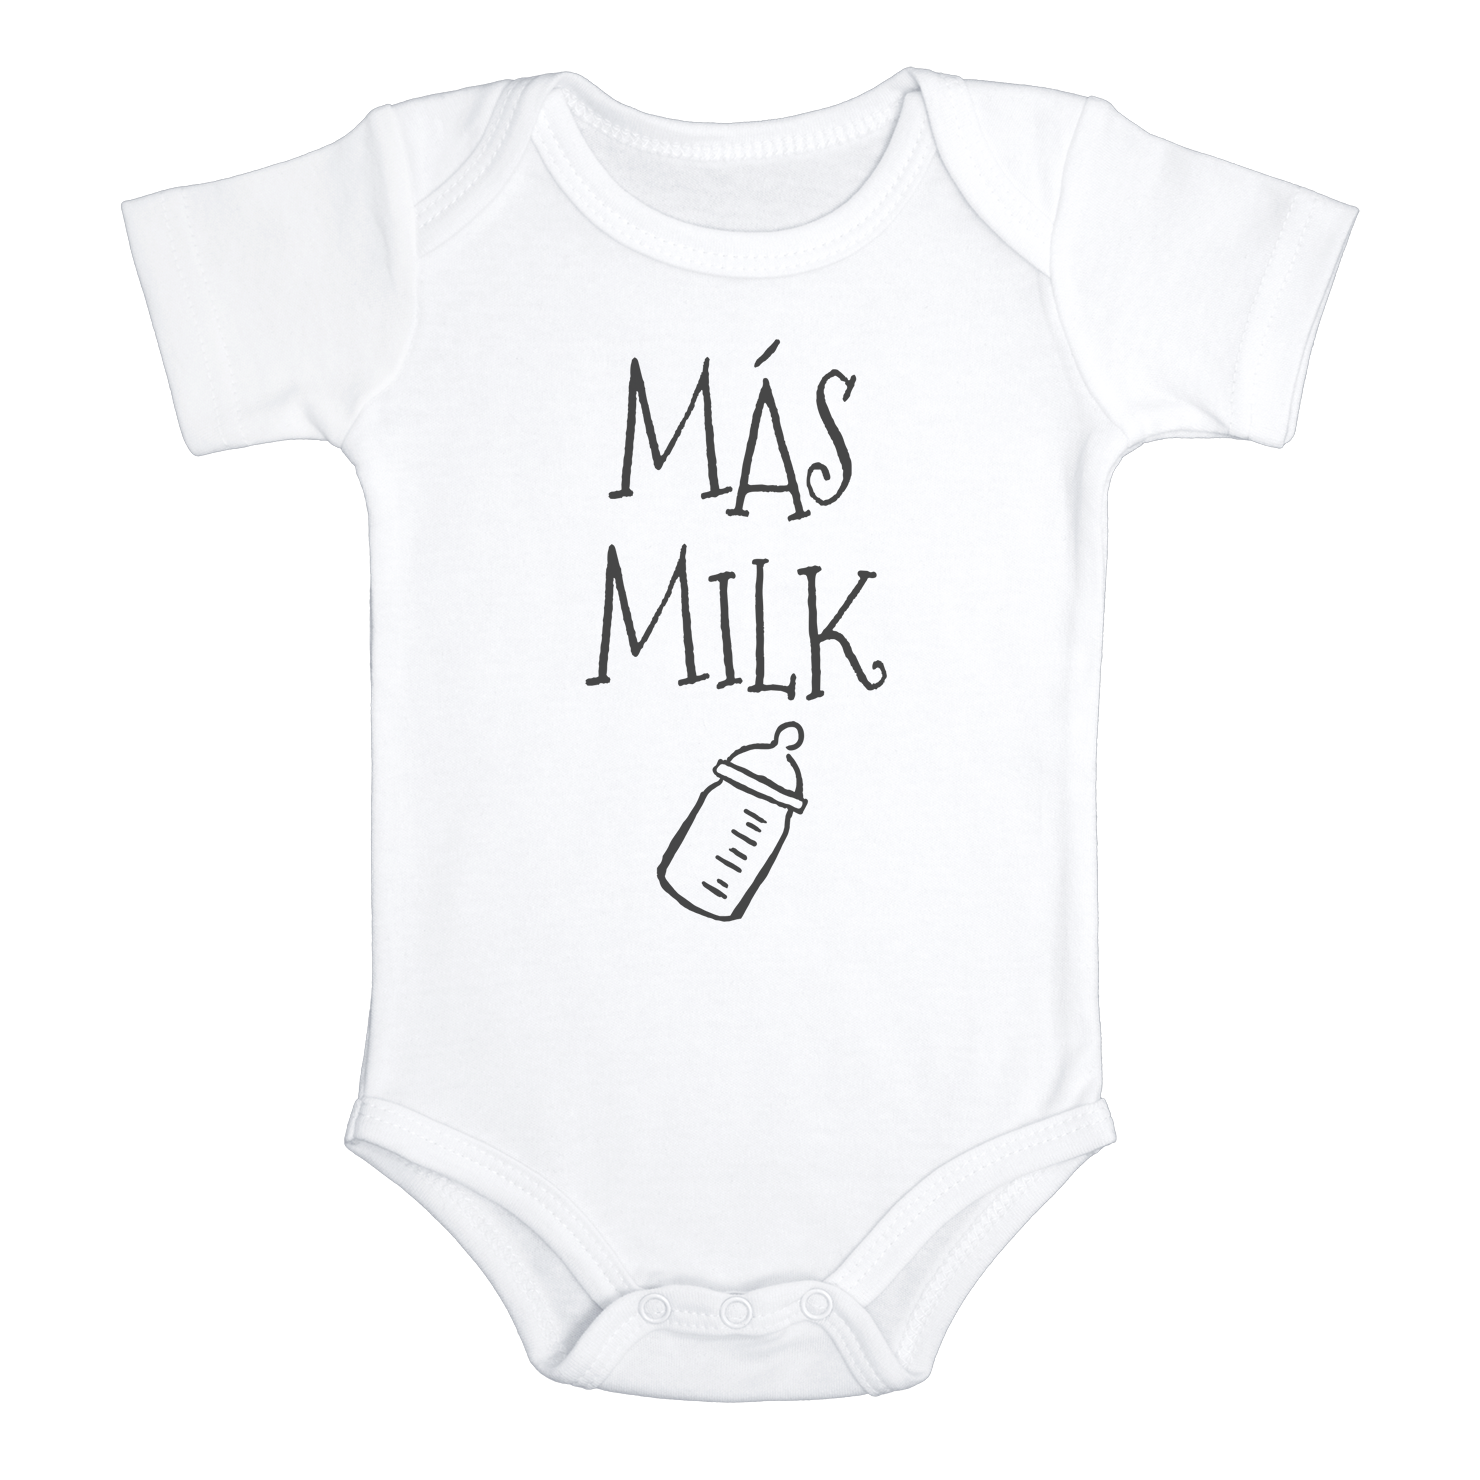 MAS MILK Funny Baby Milk Bodysuit Onesie White - HappyAddition